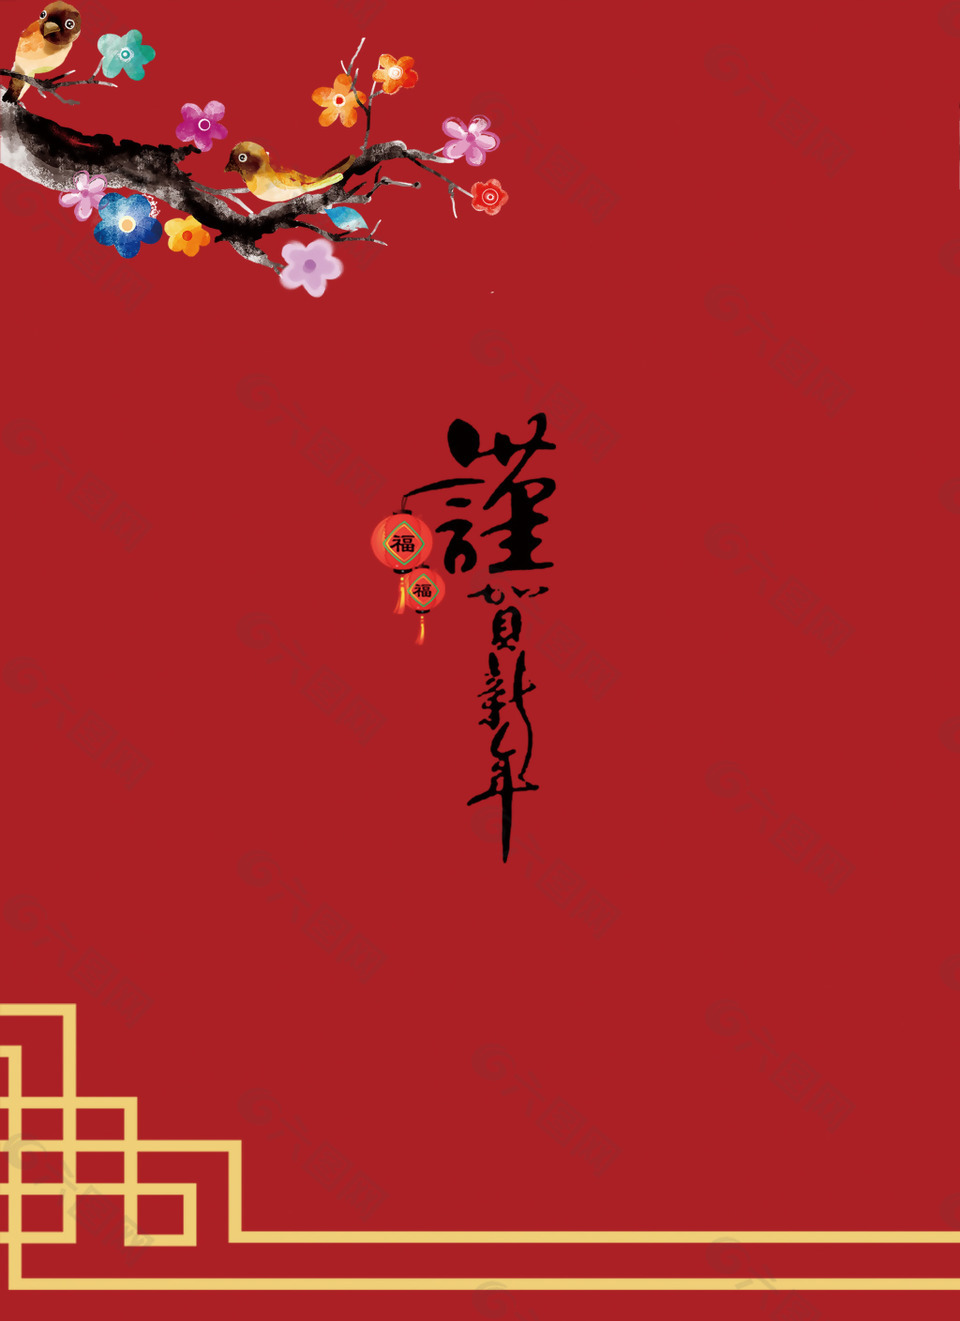 2018年红色中国风恭贺新春晚会